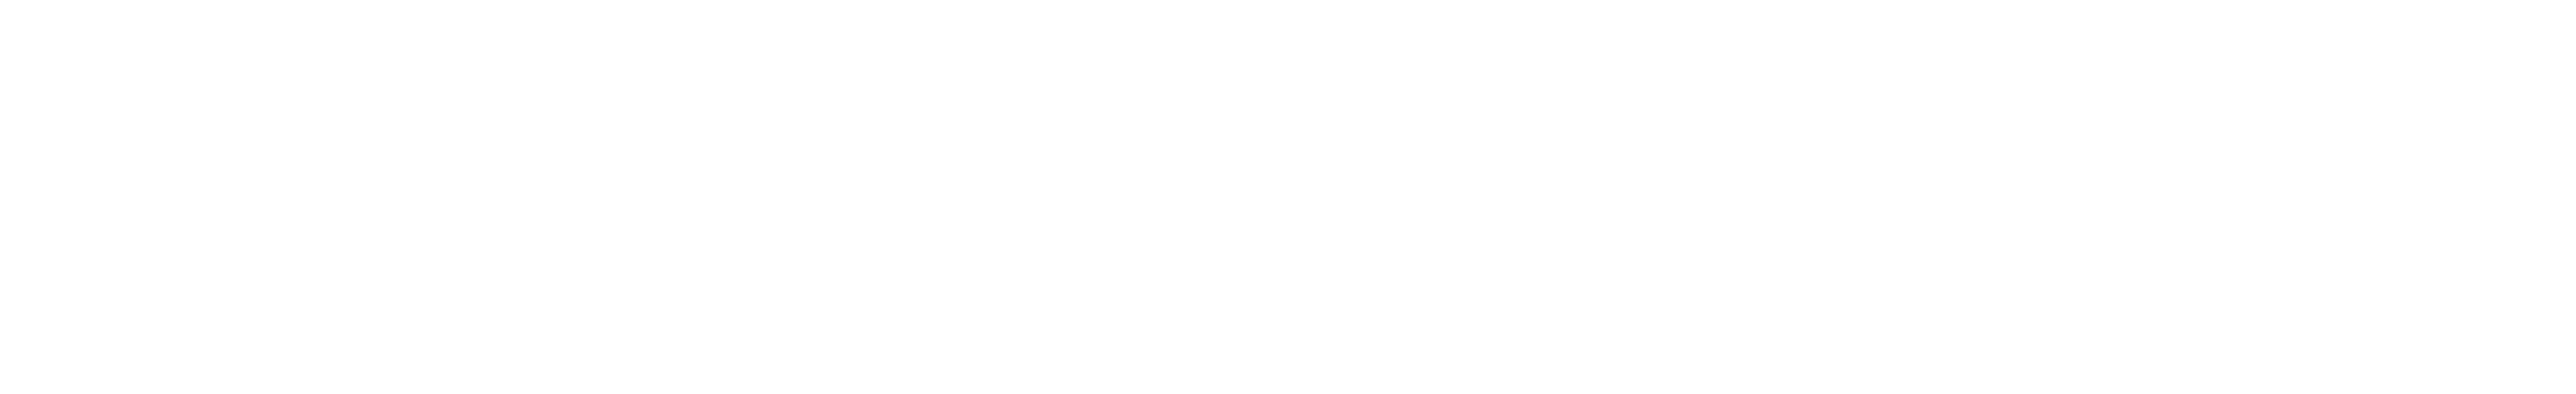 banner shape